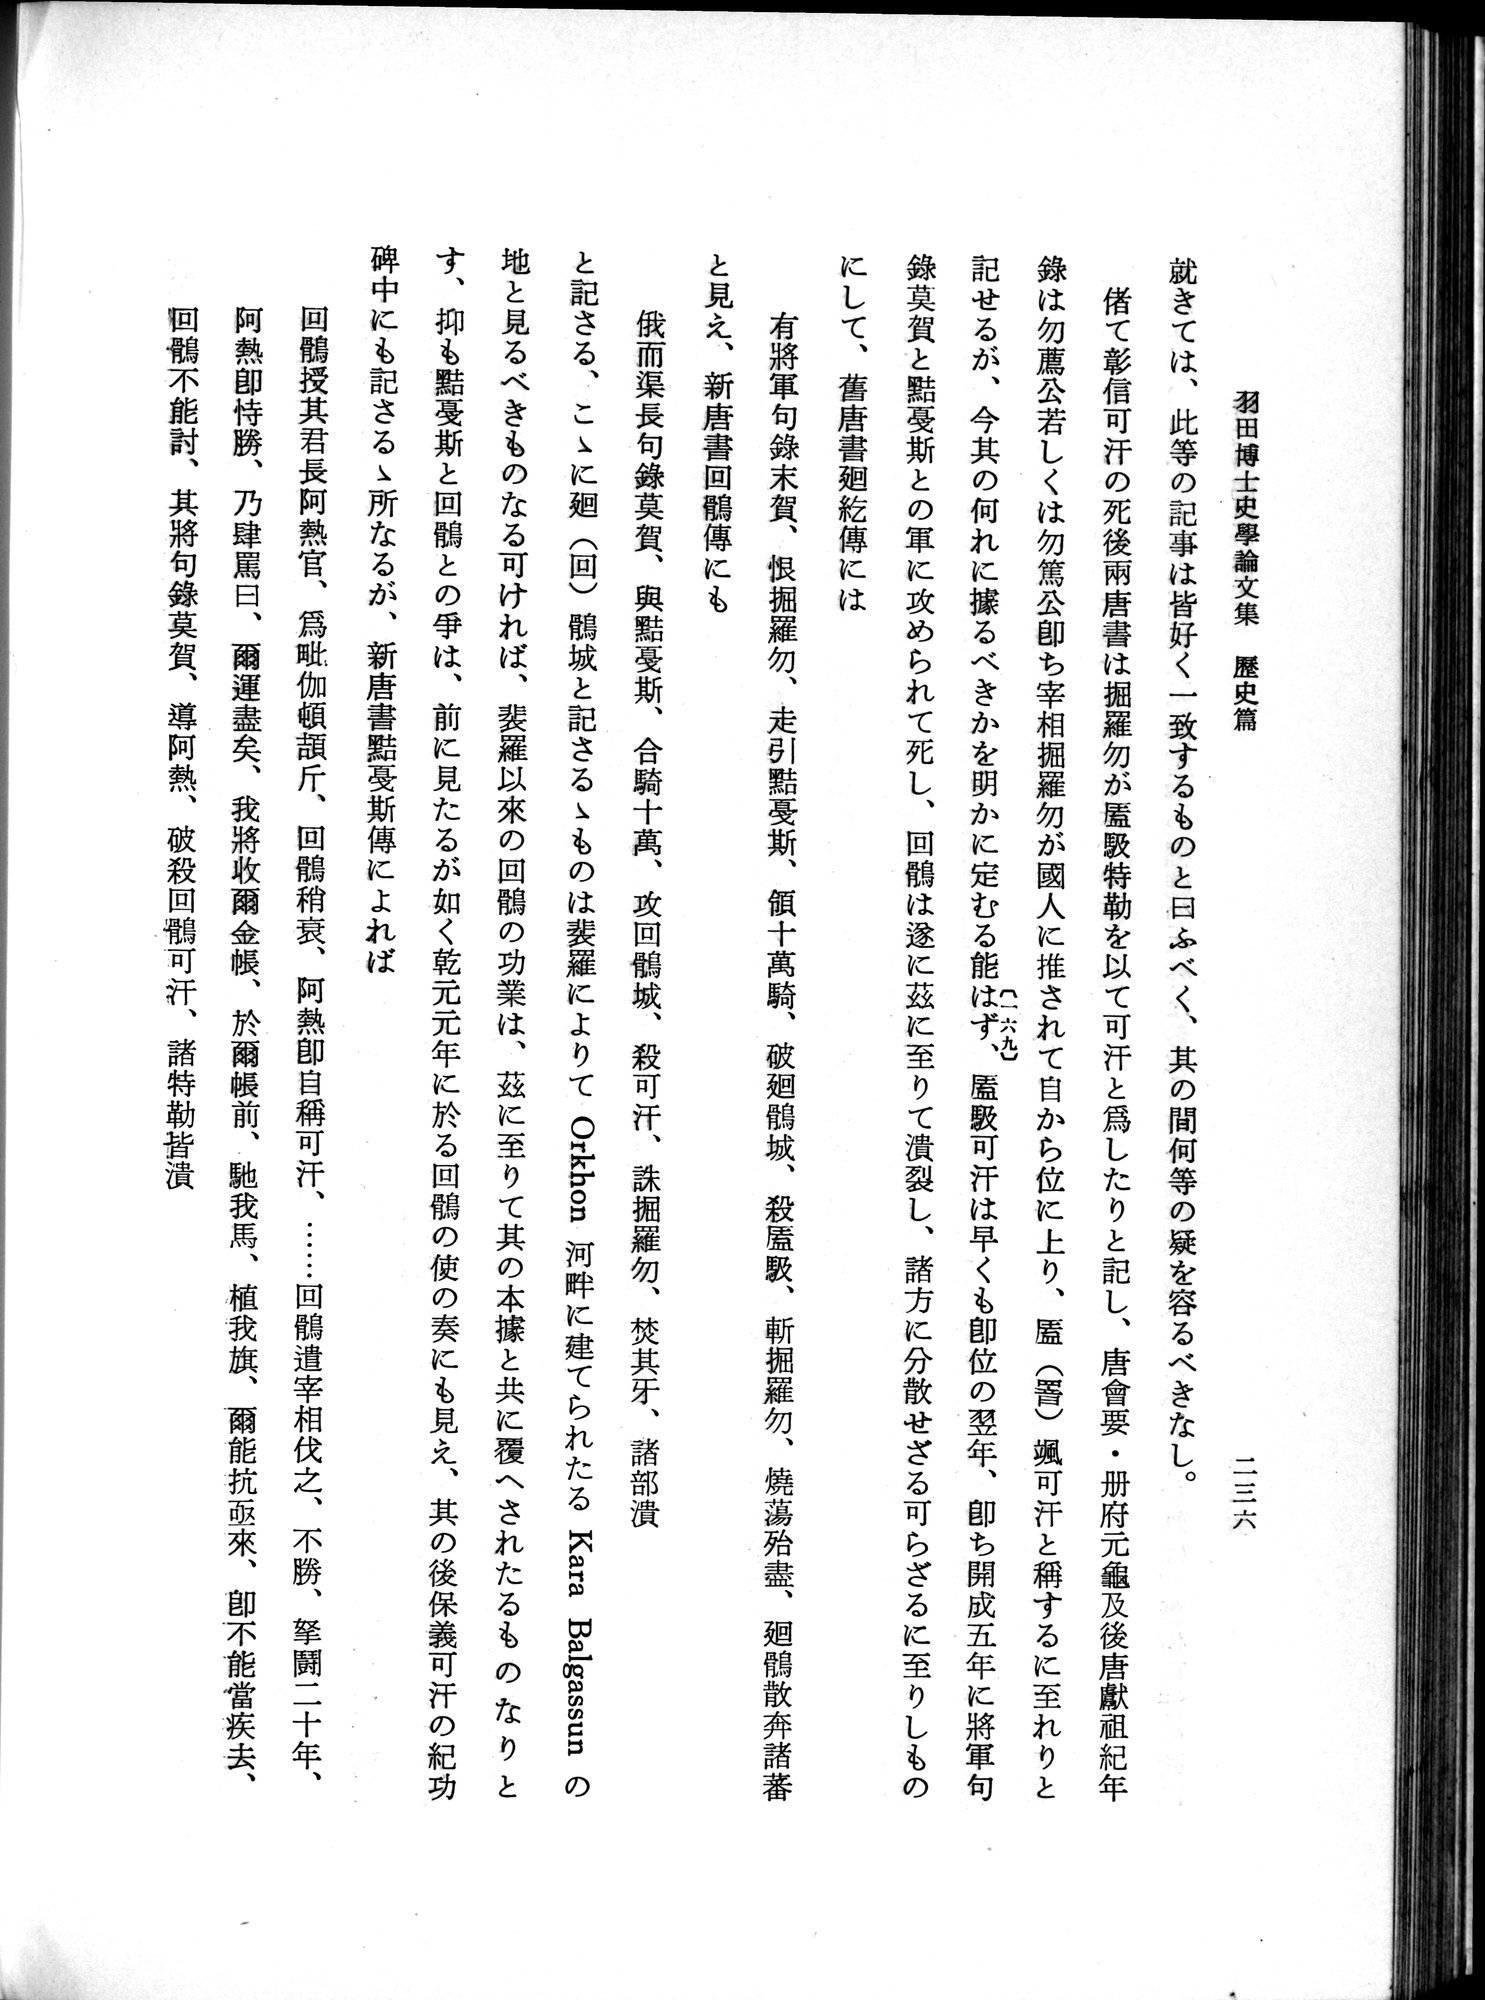 羽田博士史学論文集 : vol.1 / Page 274 (Grayscale High Resolution Image)